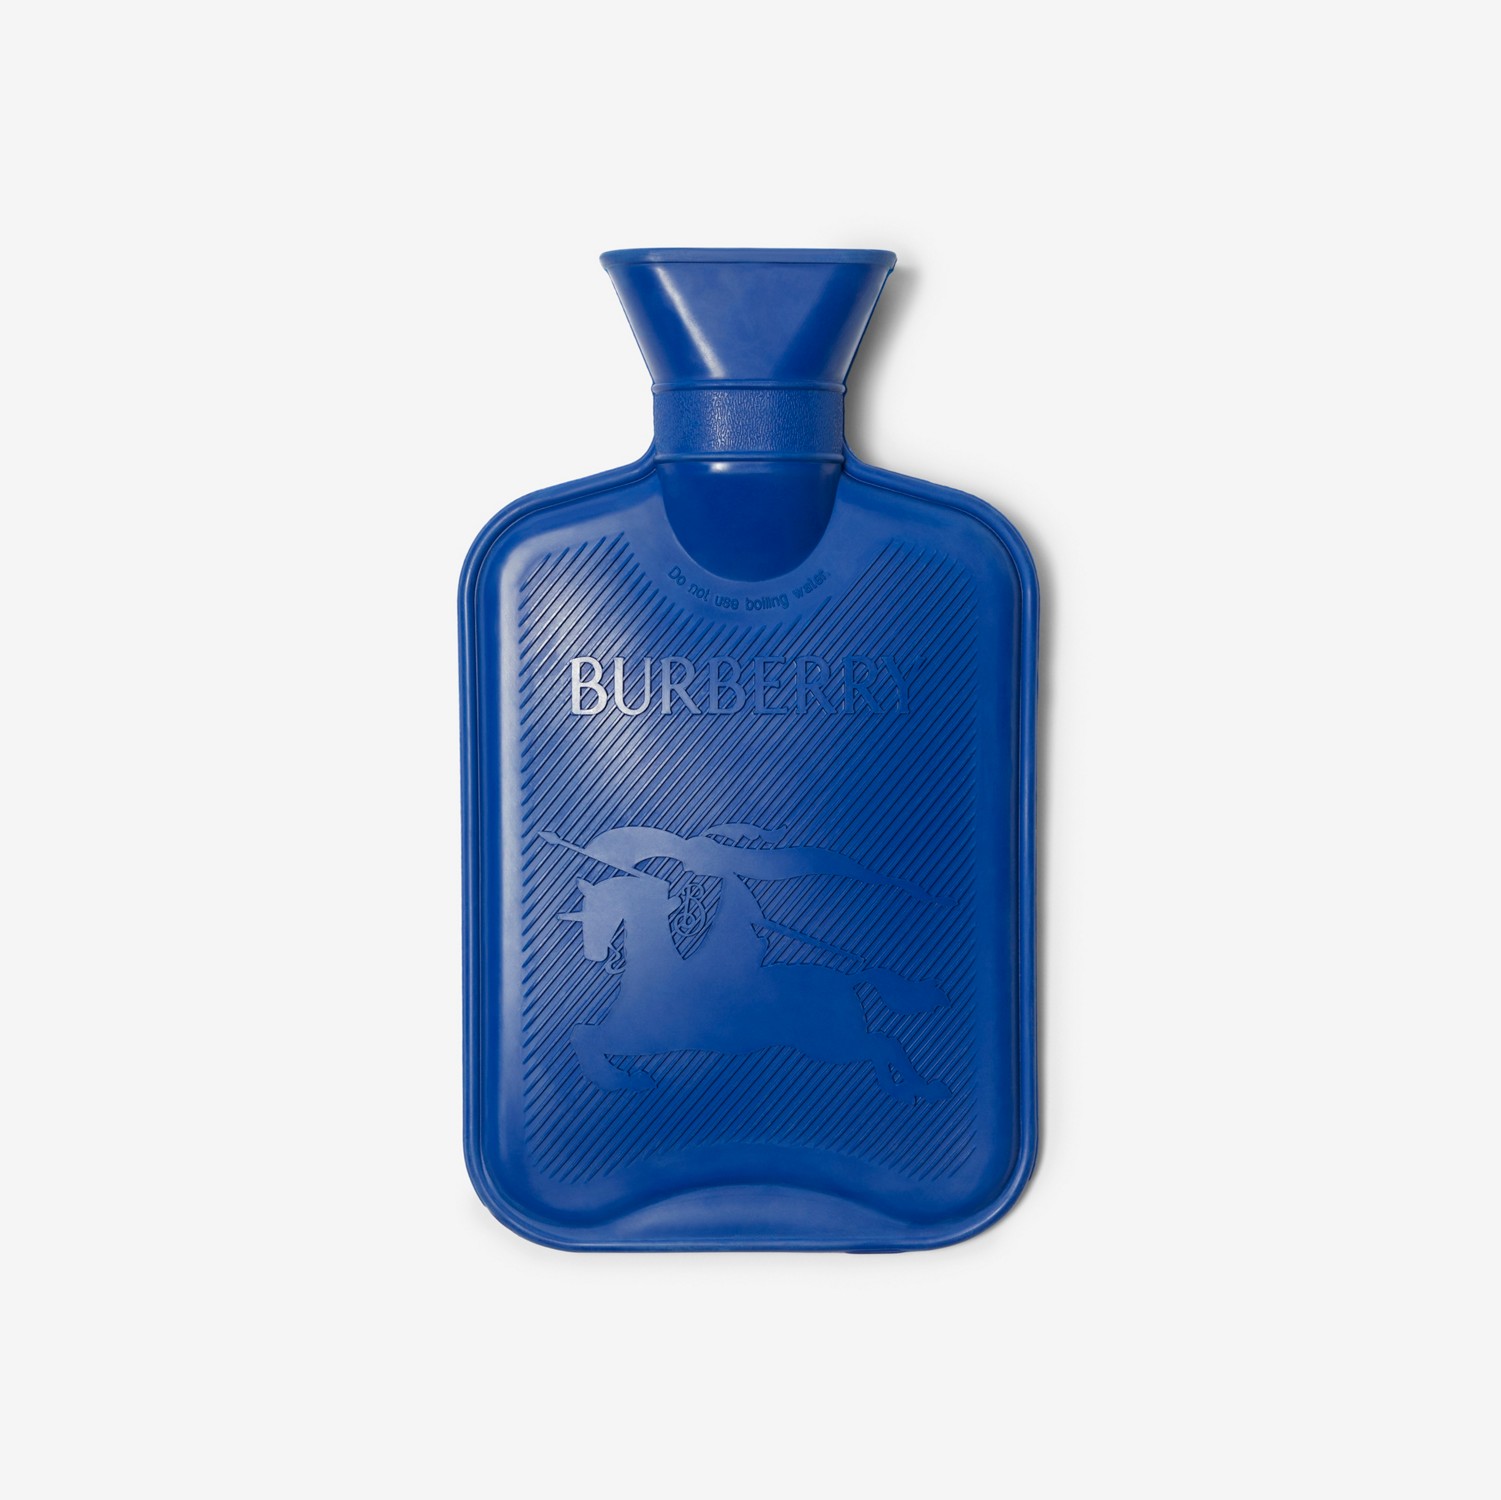 Wärmflasche mit Rosenbezug aus Fleece (Pear) | Burberry®